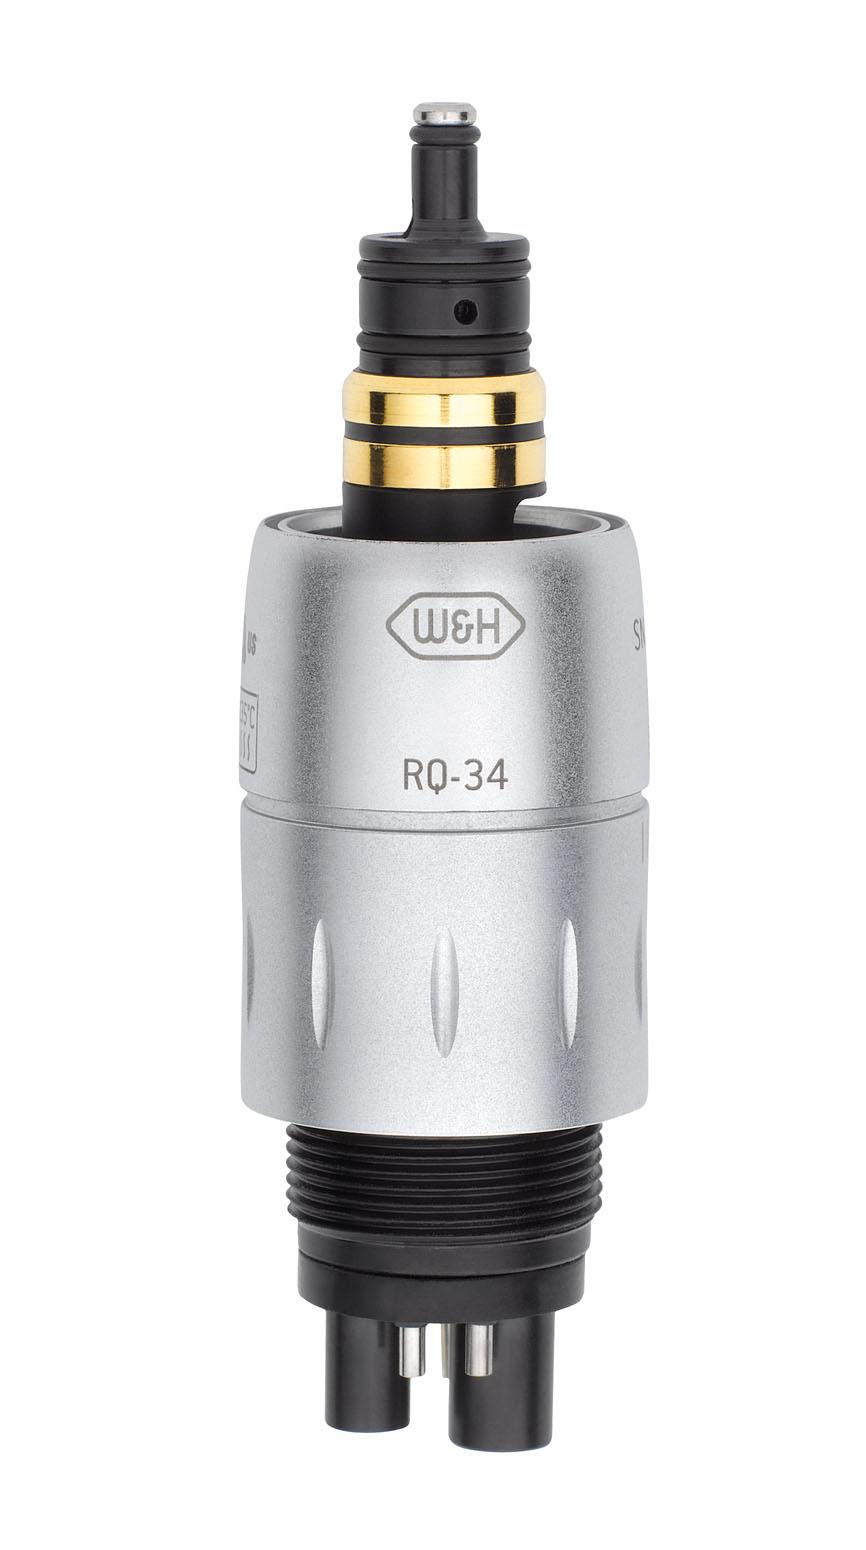 W&H RQ-34, Roto-Quick Lichtkupplung für Turbinen und Luftmotoren  -  Rücksaugstopp, Sprayregelung | Art.Nr.: 10403400